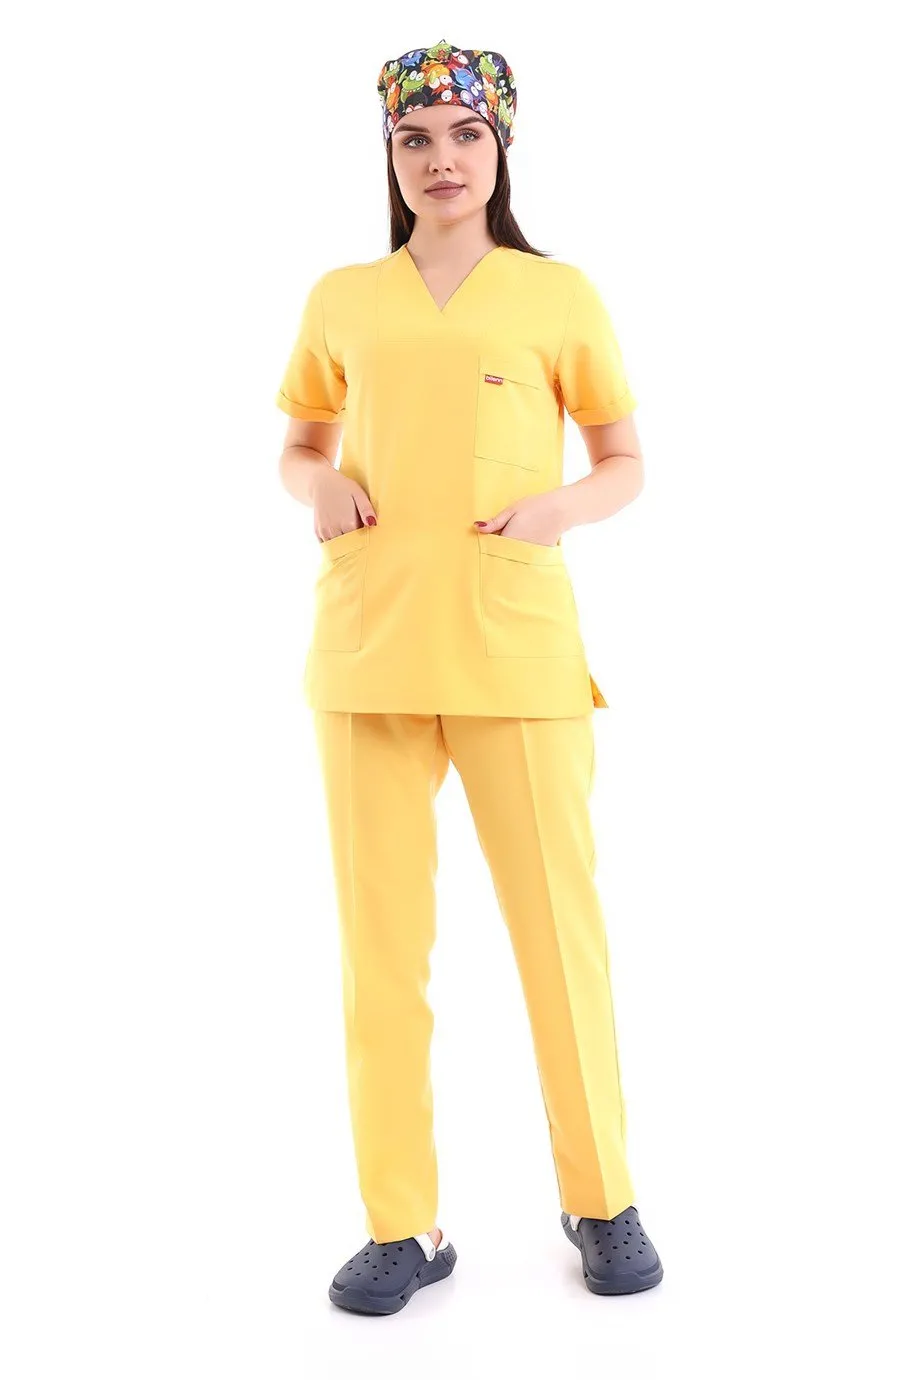 Zarf Yaka Kadın Takım - 08 Koyu Sarı